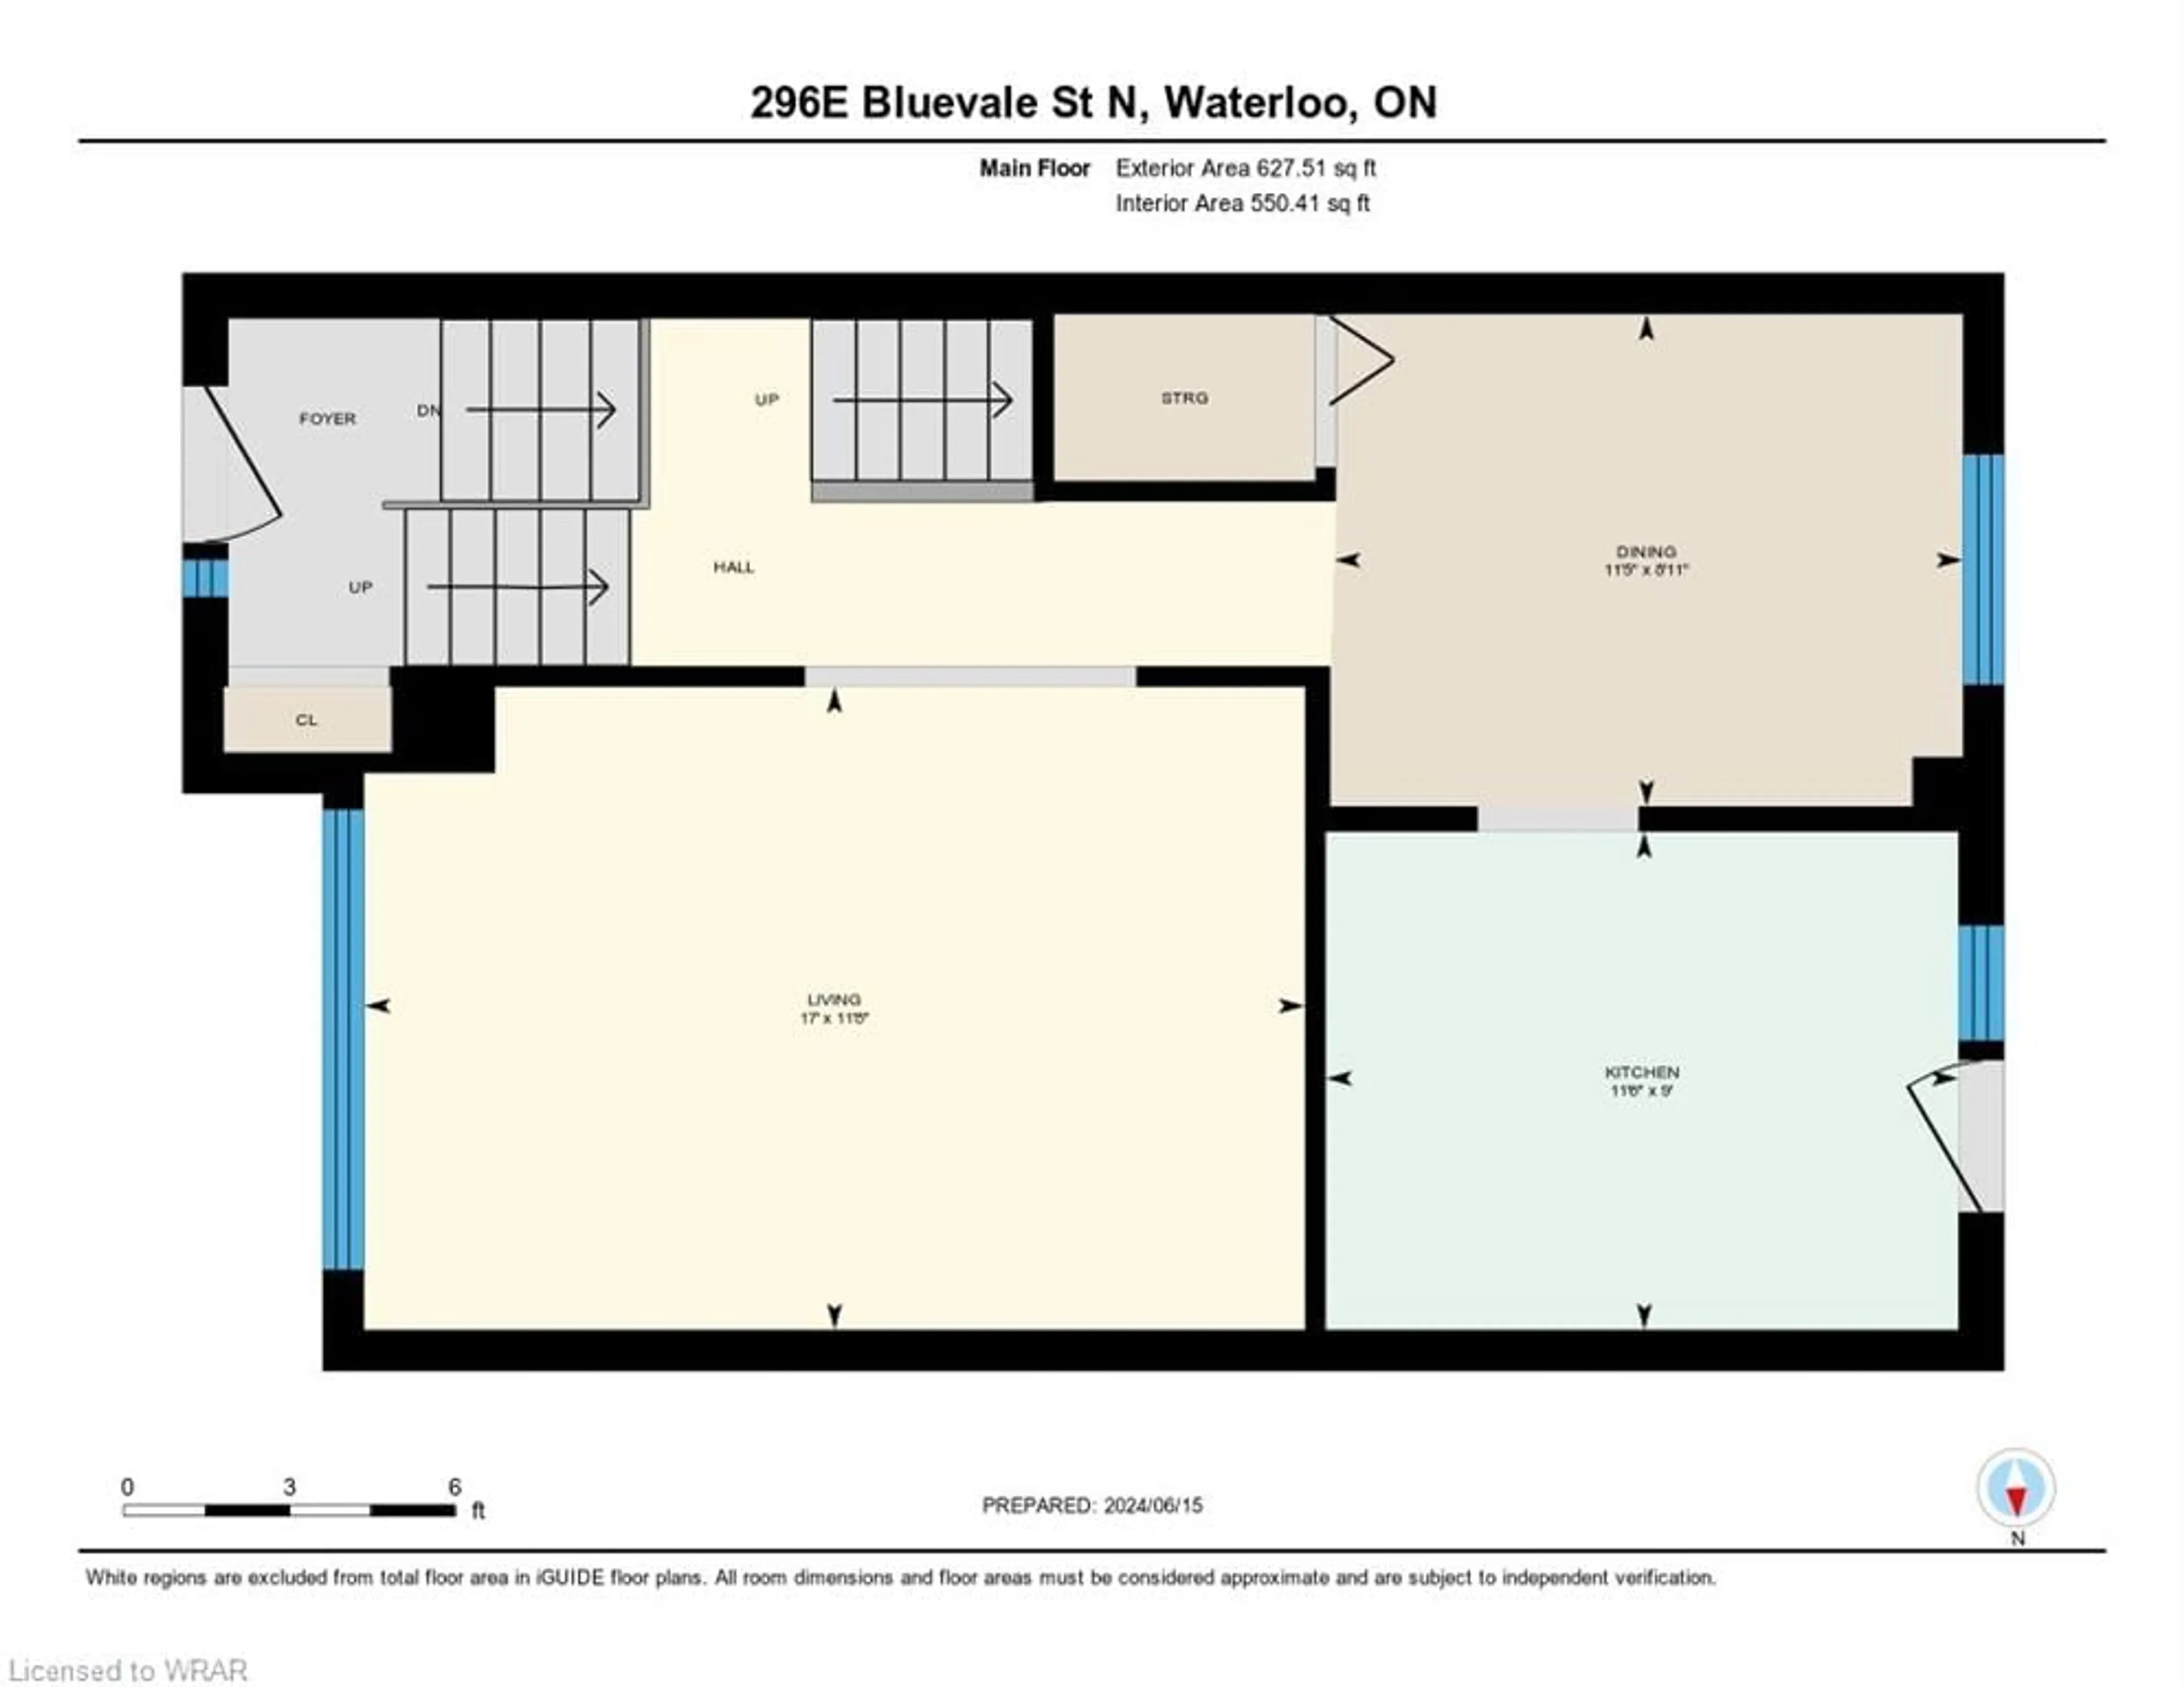 Floor plan for 296 Bluevale St #E, Waterloo Ontario N2J 4G3